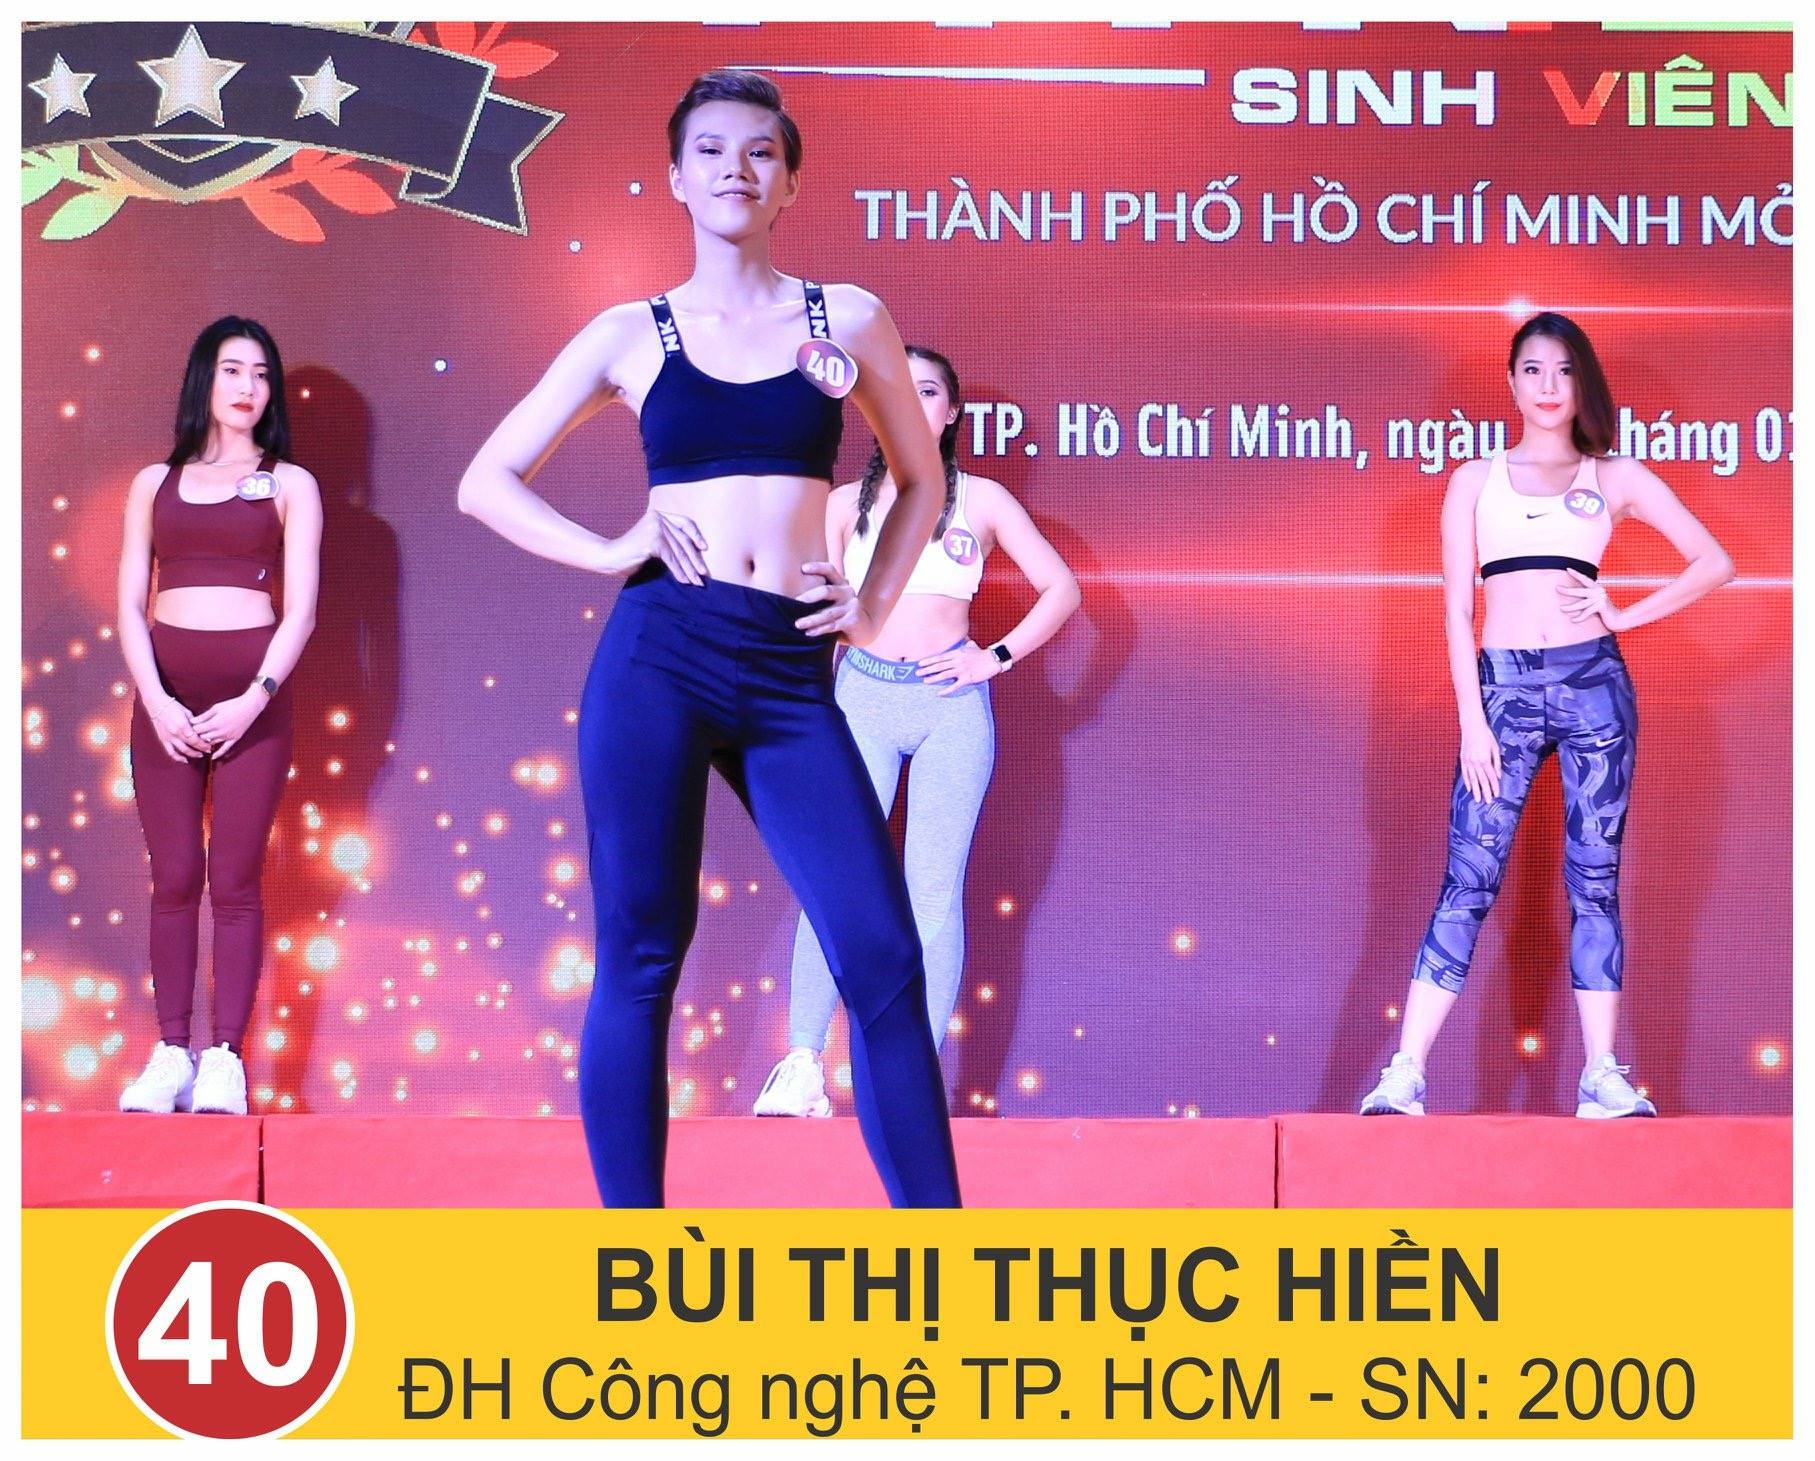 2 thành viên CLB Model HUTECH vào VCK Cuộc thi Ngôi sao Fitness Sinh viên TP.HCM 2019 10